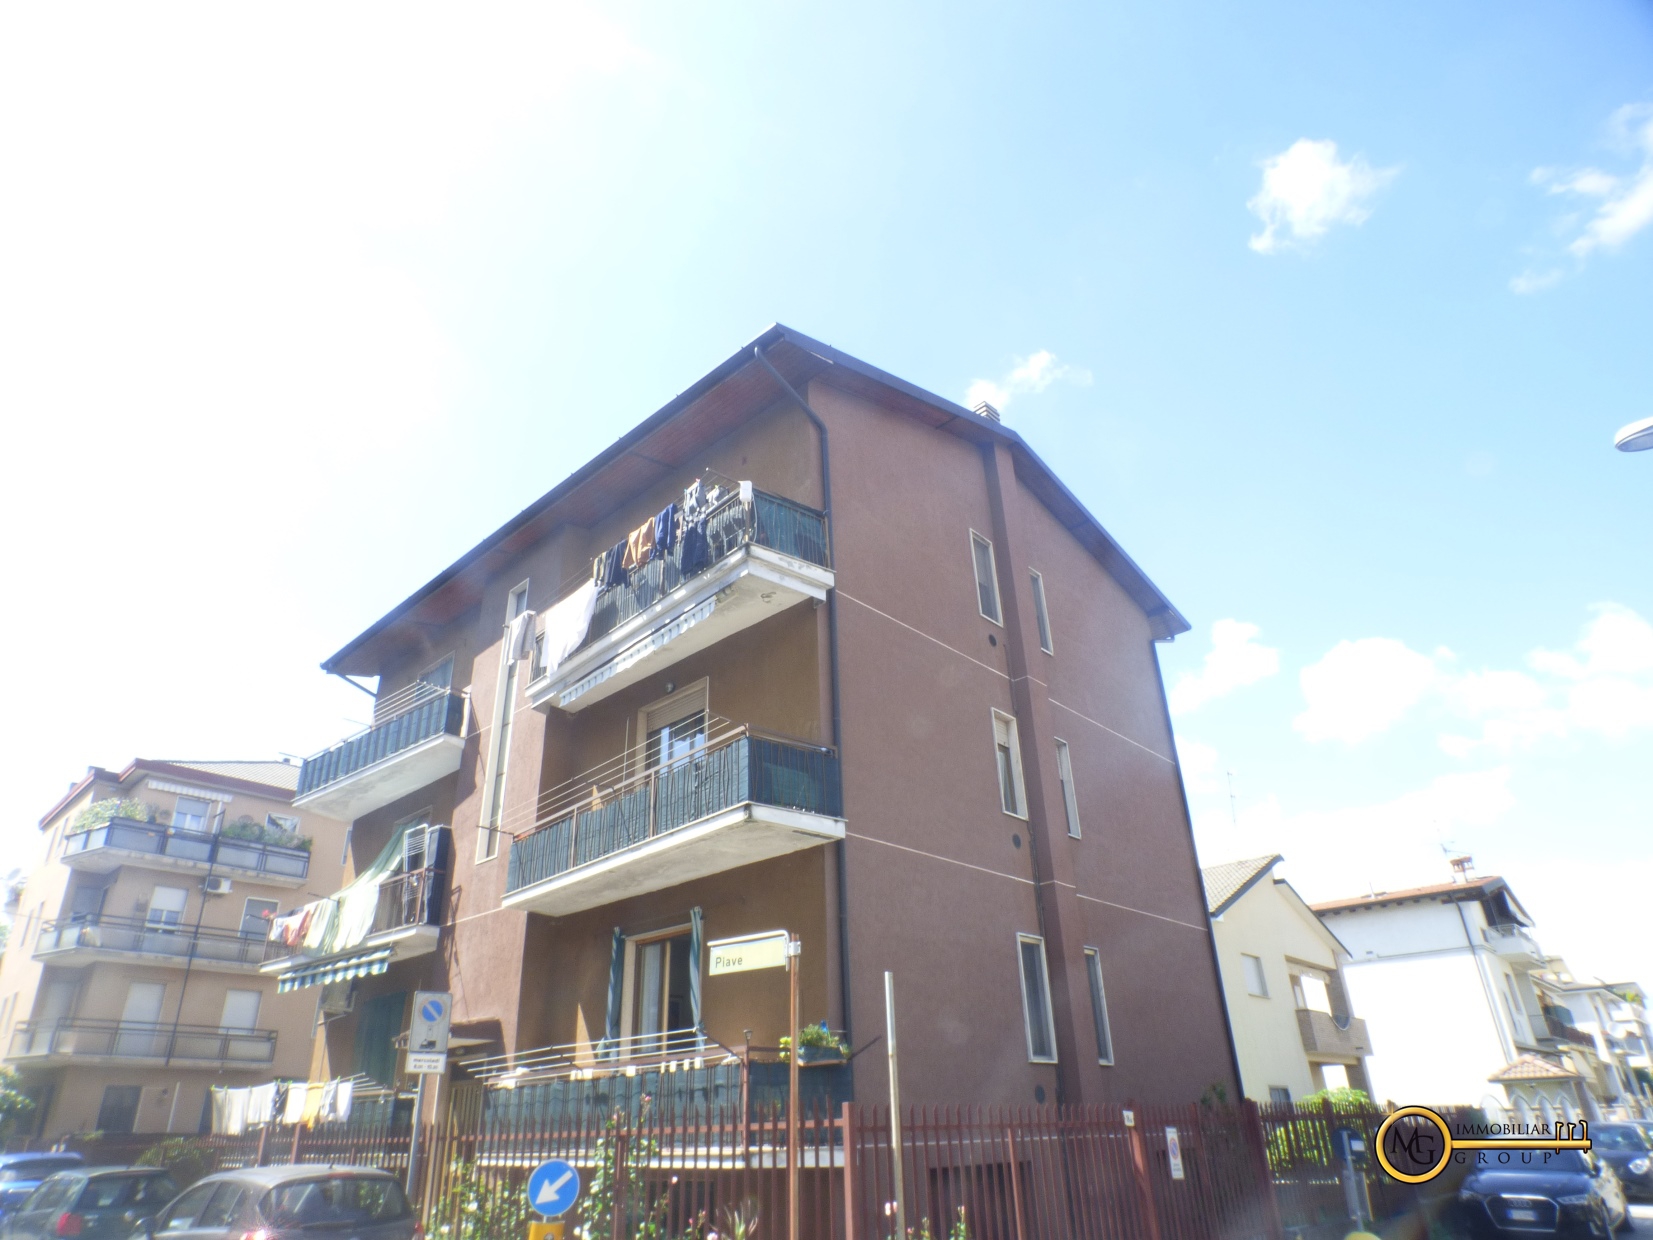 Appartamento in vendita a Vignate, 2 locali, prezzo € 100.000 | PortaleAgenzieImmobiliari.it